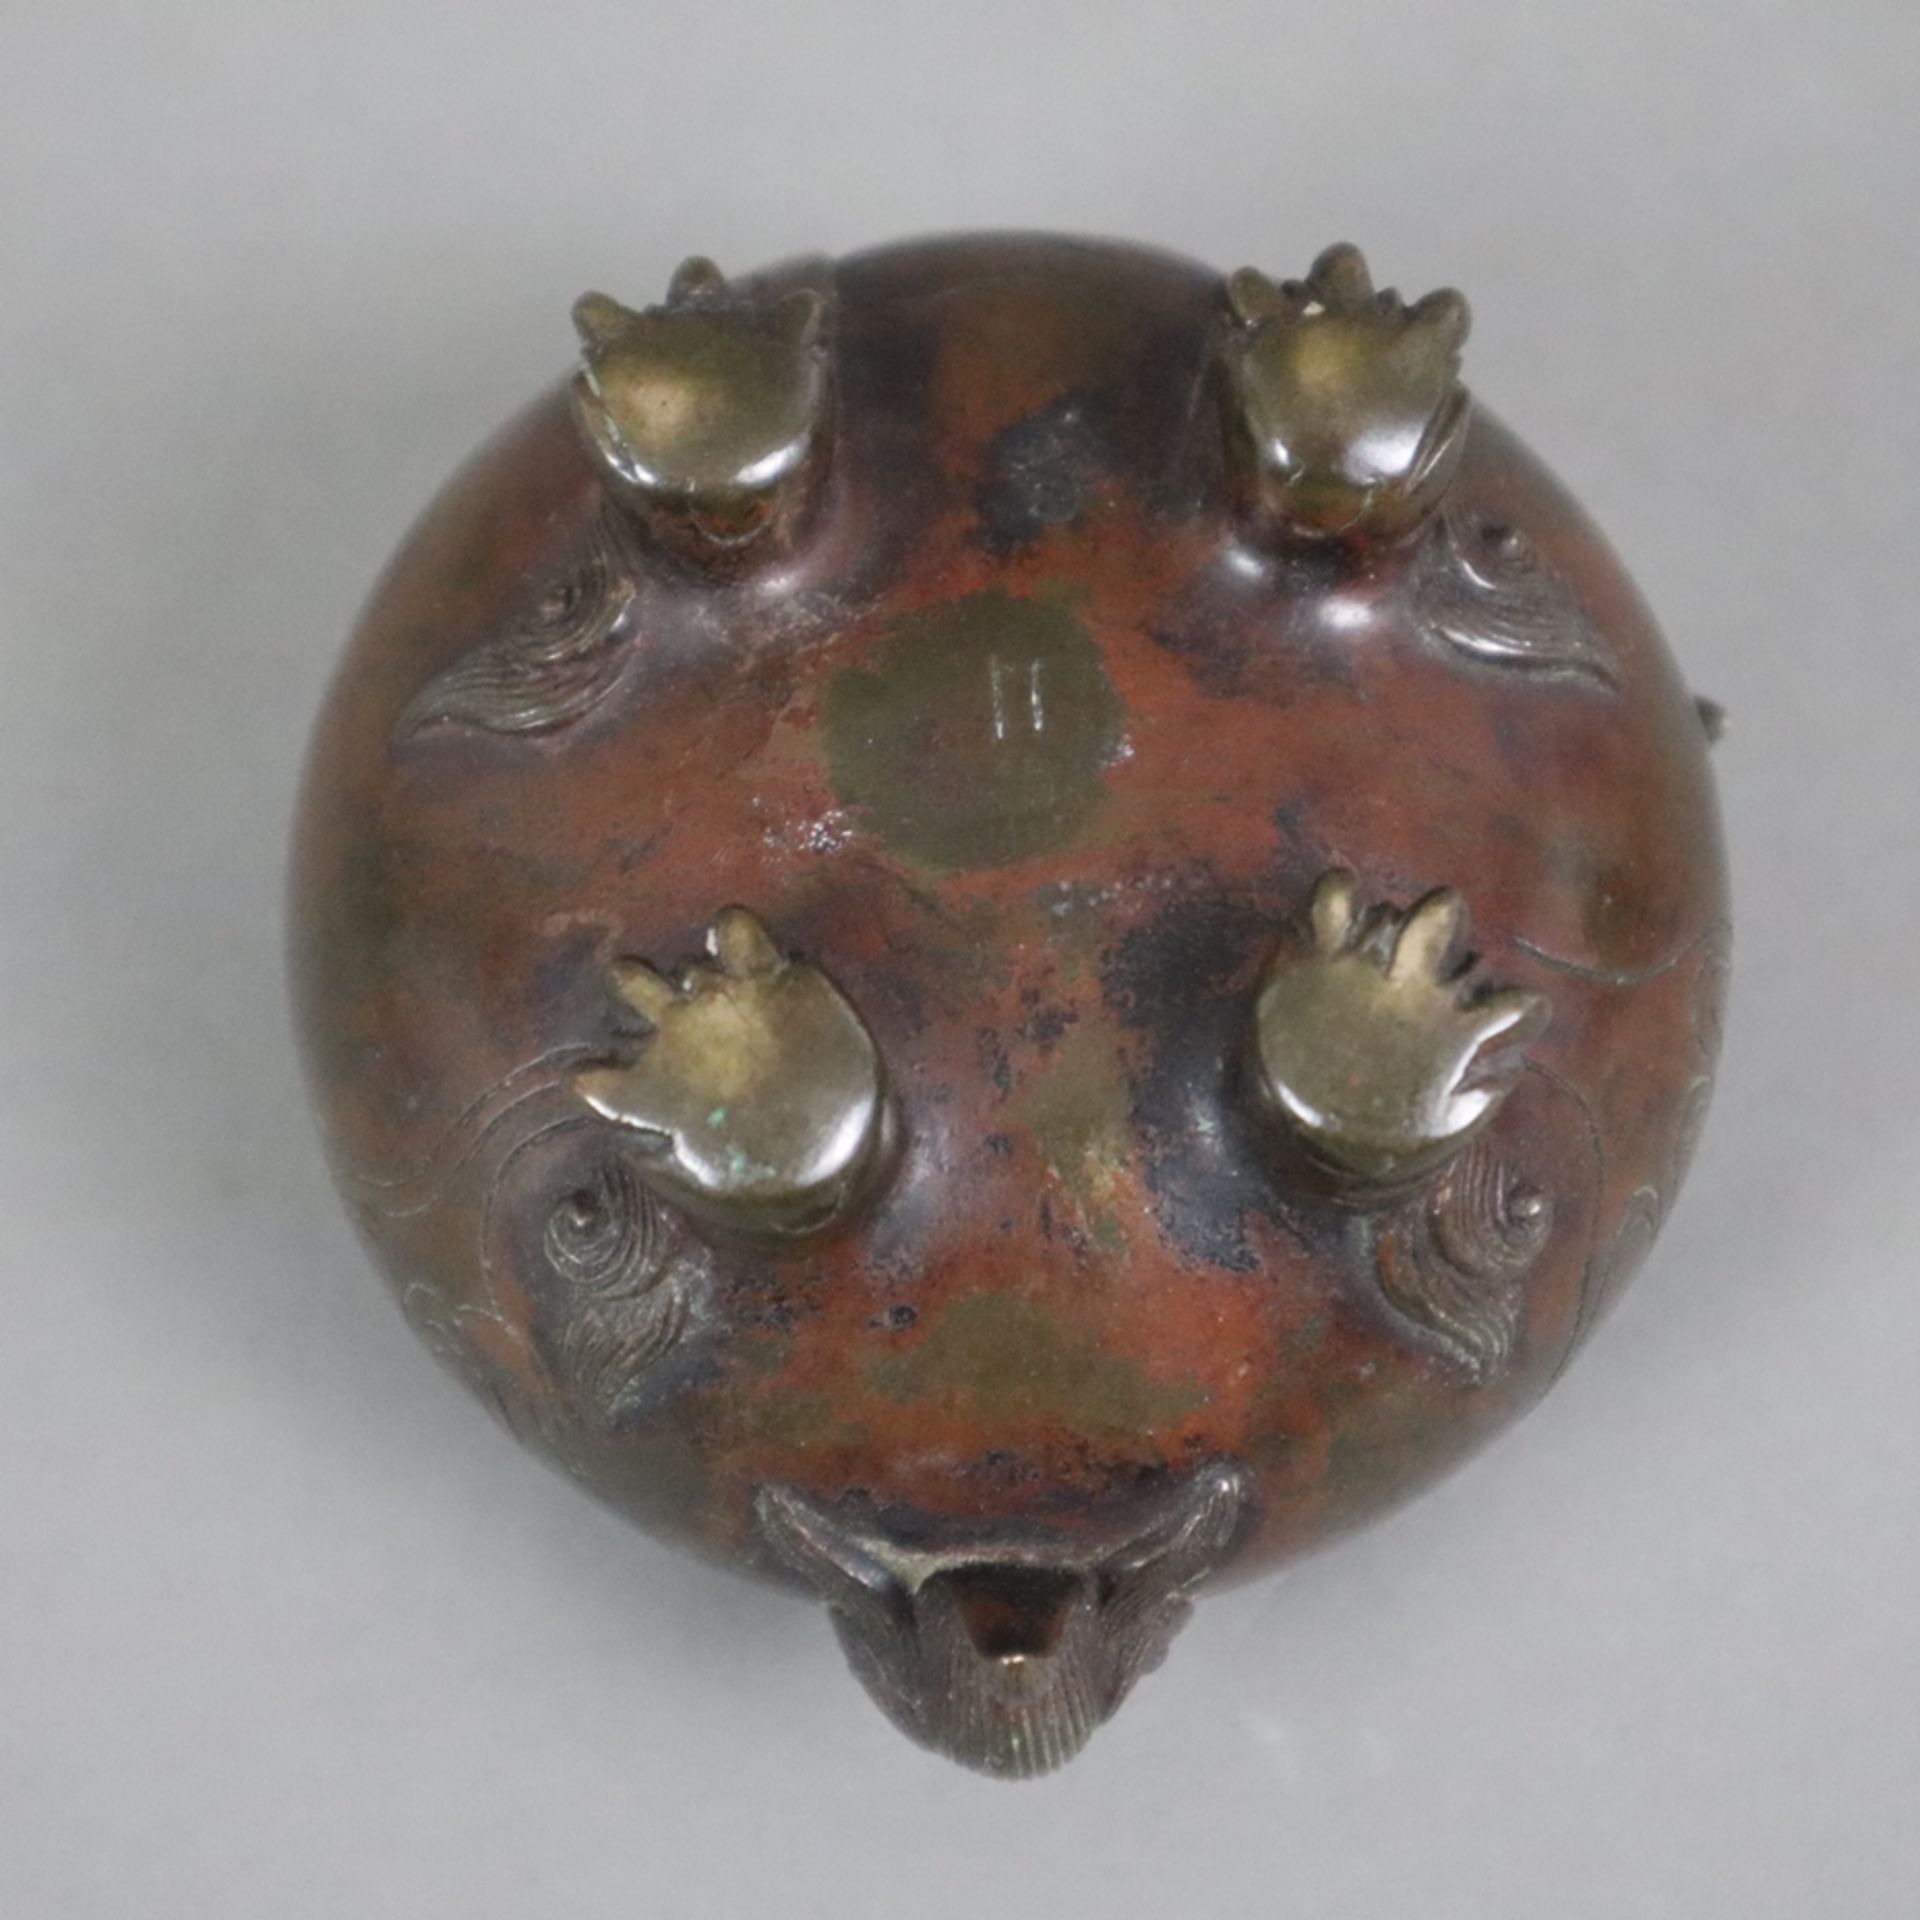 Kleiner figürlicher Koro - Japan, Bronze, braun patiniert, in Gestalt eines runden Shishi, Steckdec - Bild 6 aus 6